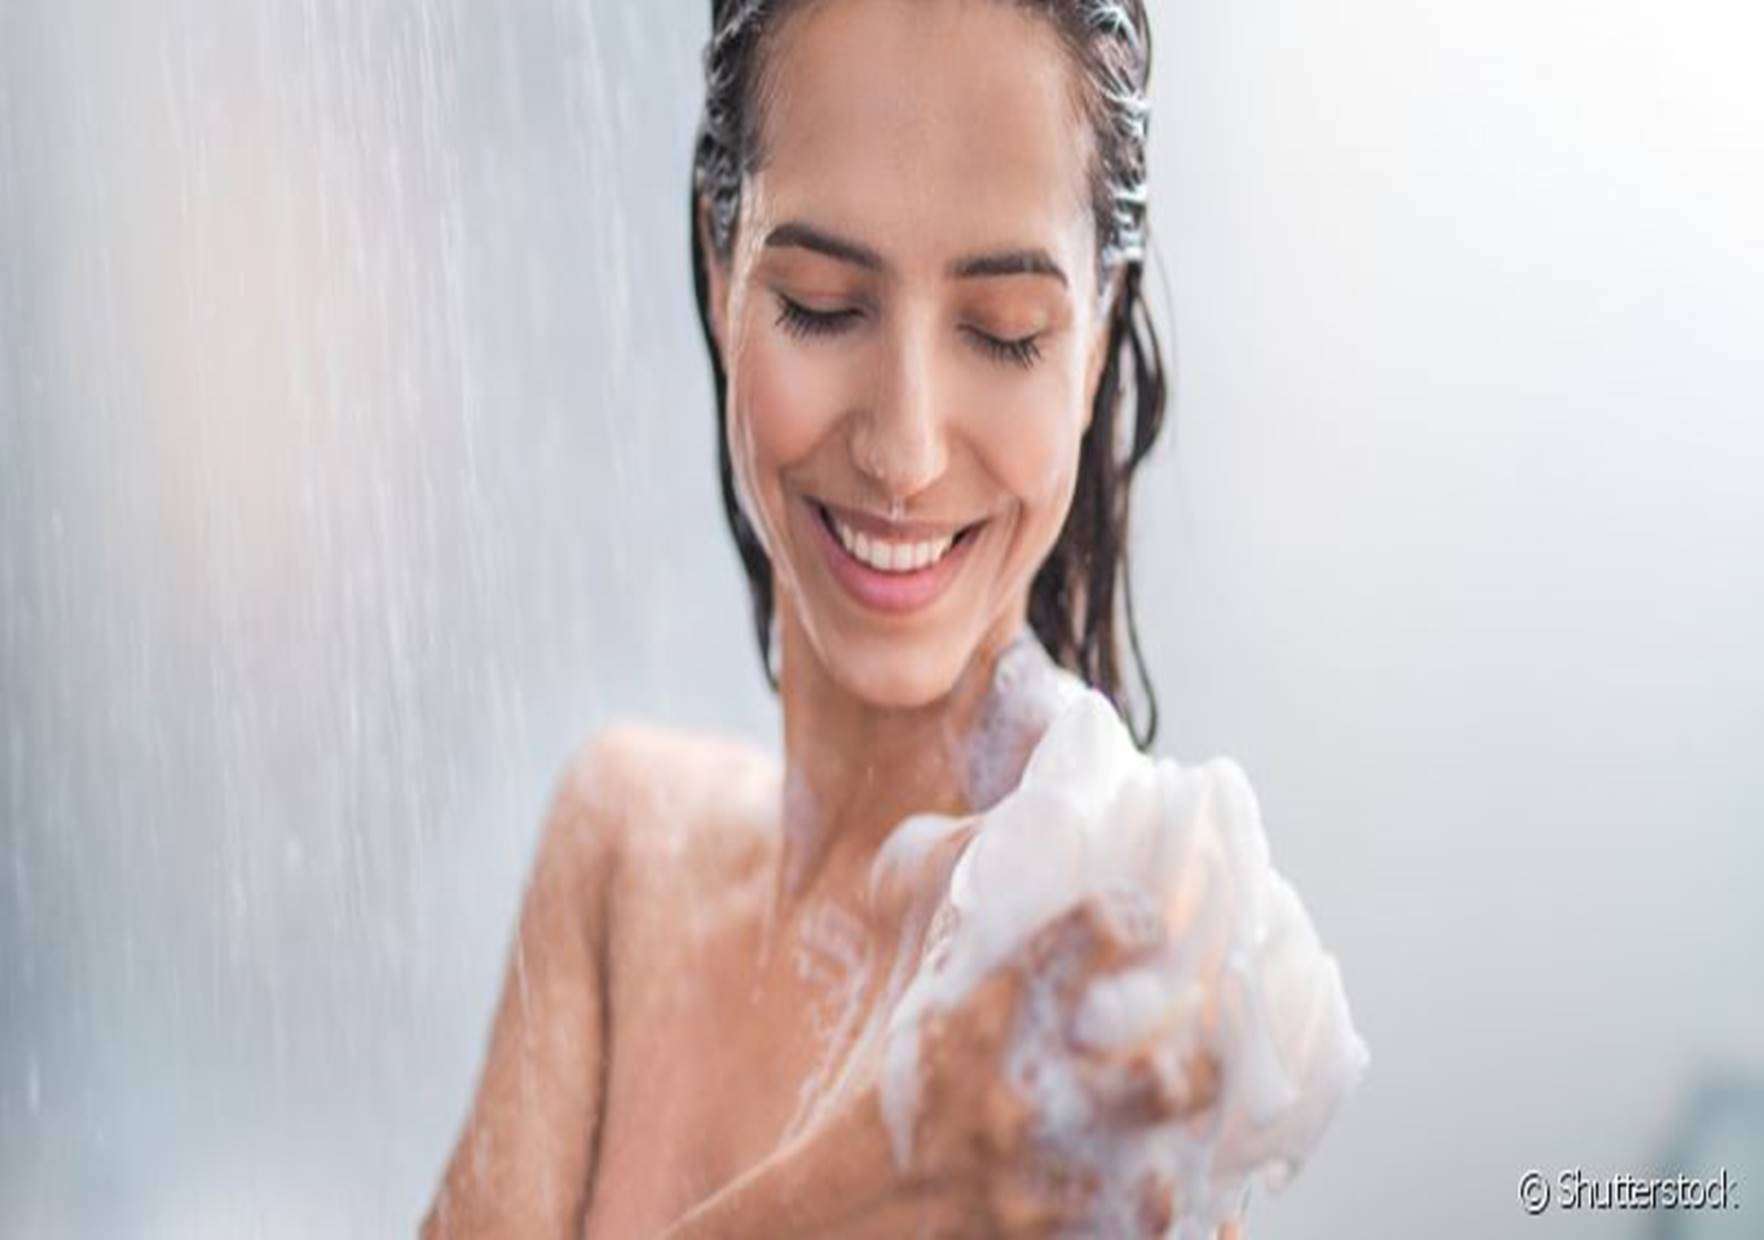 Banho frio faz bem? Os benefícios da gelada no corpo